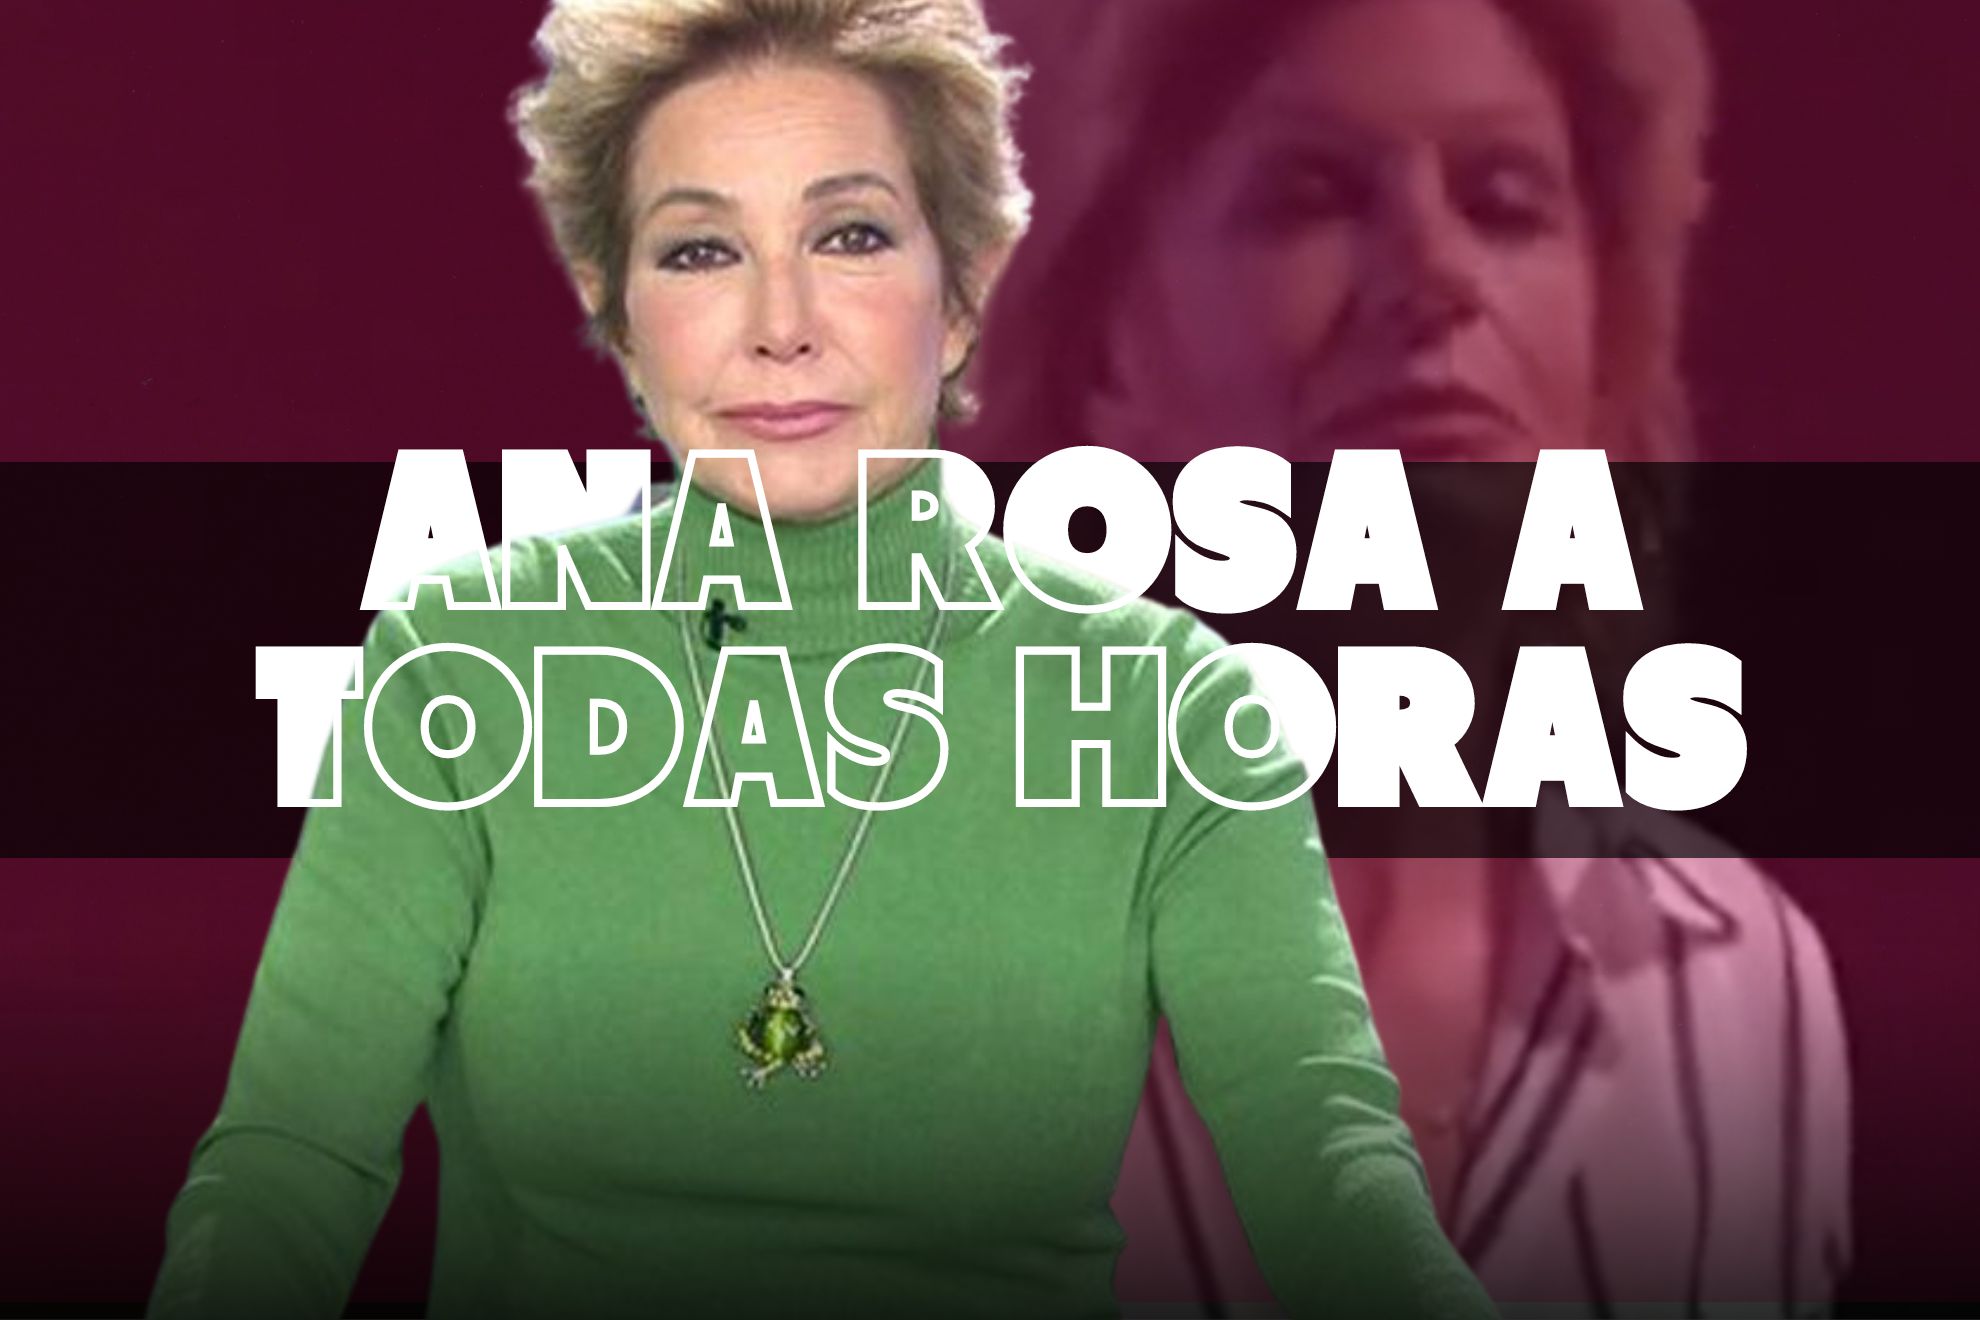 Vídeo | La parodia de Polònia que asusta por lo cercana a la realidad: Ana Rosa a todas horas